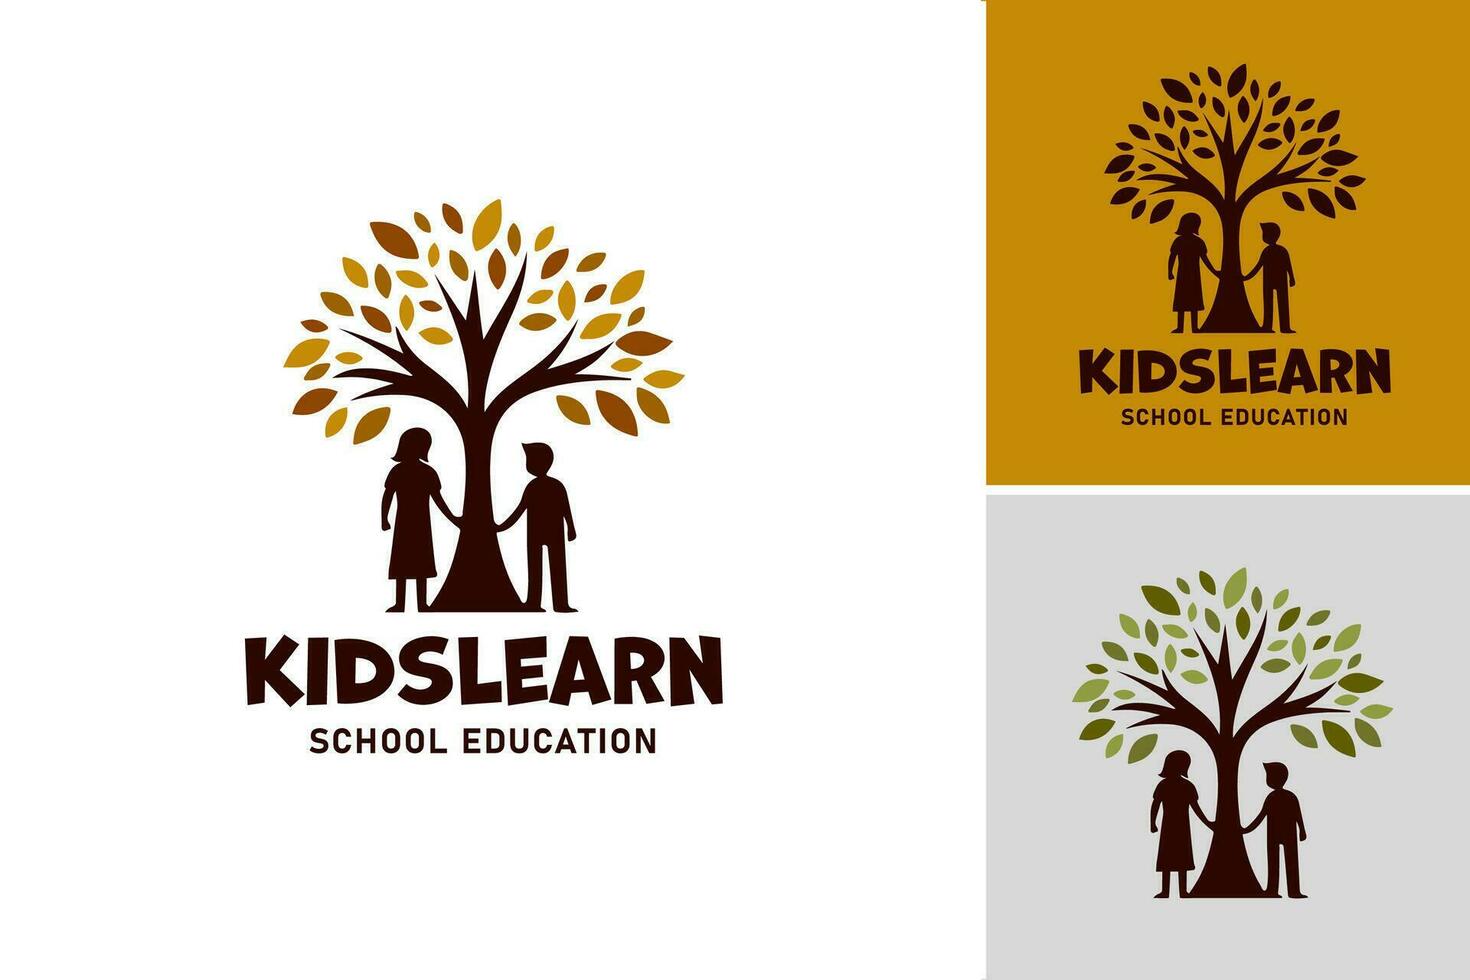 kinderen leren school- onderwijs logo is een geschikt Bedrijfsmiddel voor leerzaam instellingen of programma's gericht Bij onderwijs kinderen. het kan worden gebruikt net zo een logo naar staan voor aan het leren en onderwijs voor kinderen. vector